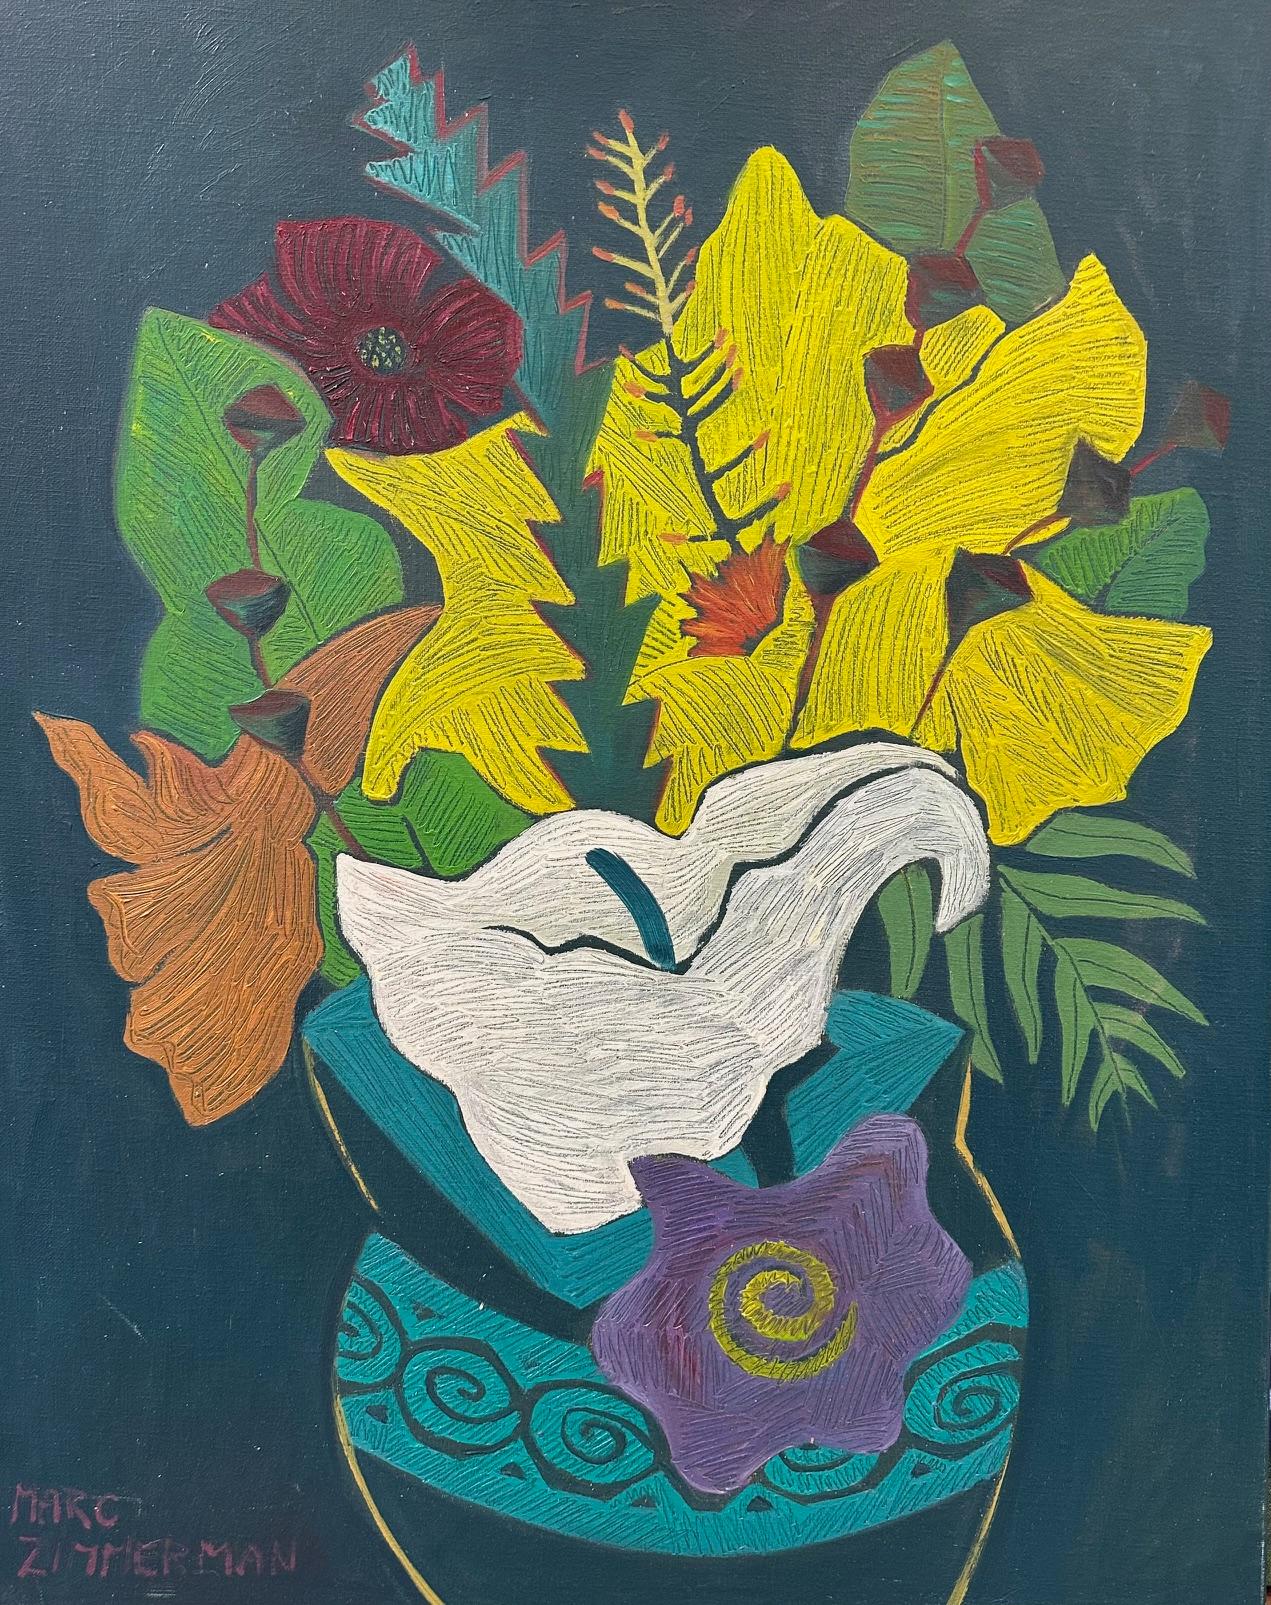 Blumen  - Abstrakte Malerei - Öl auf Leinwand von Marc Zimmerman


Marc Zimmerman schafft verspielte Gemälde, ob tiefgründiger, geheimnisvoller Dschungel oder herrlich skurrile Blumen. Seine Farbpalette erkundet verschiedene Harmonien und überrascht